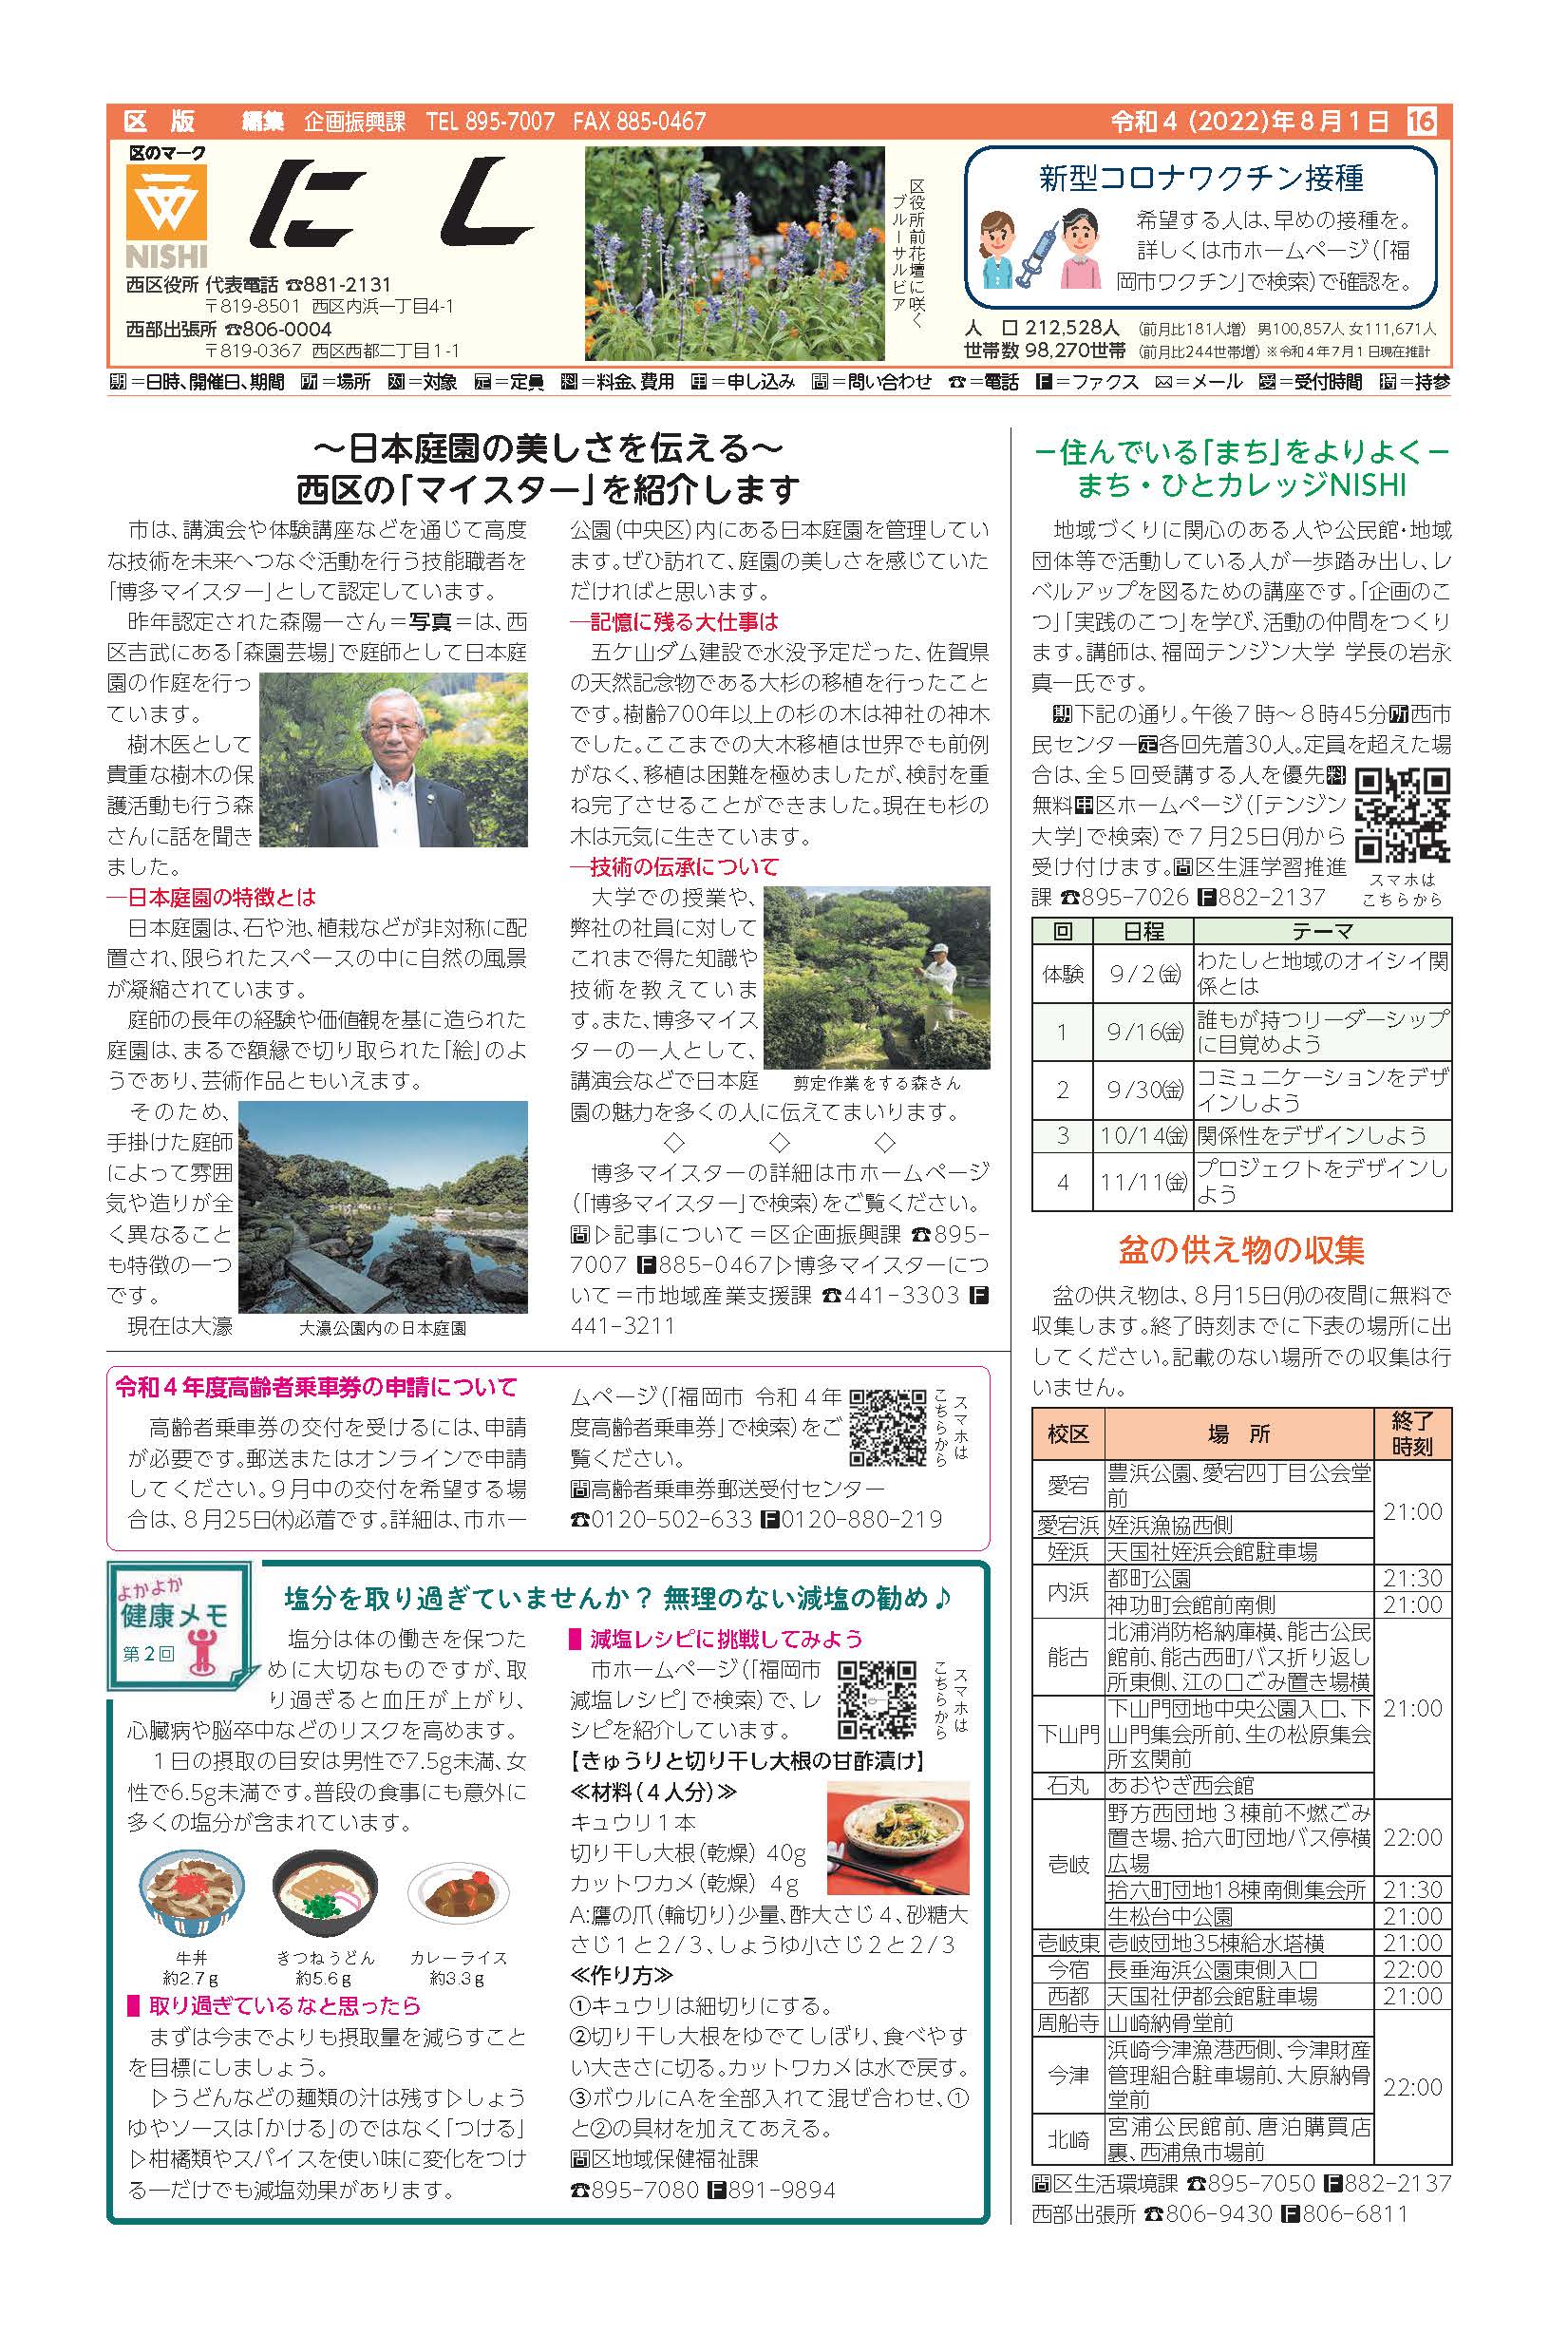 福岡市政だより2022年8月1日号の西区版の紙面画像